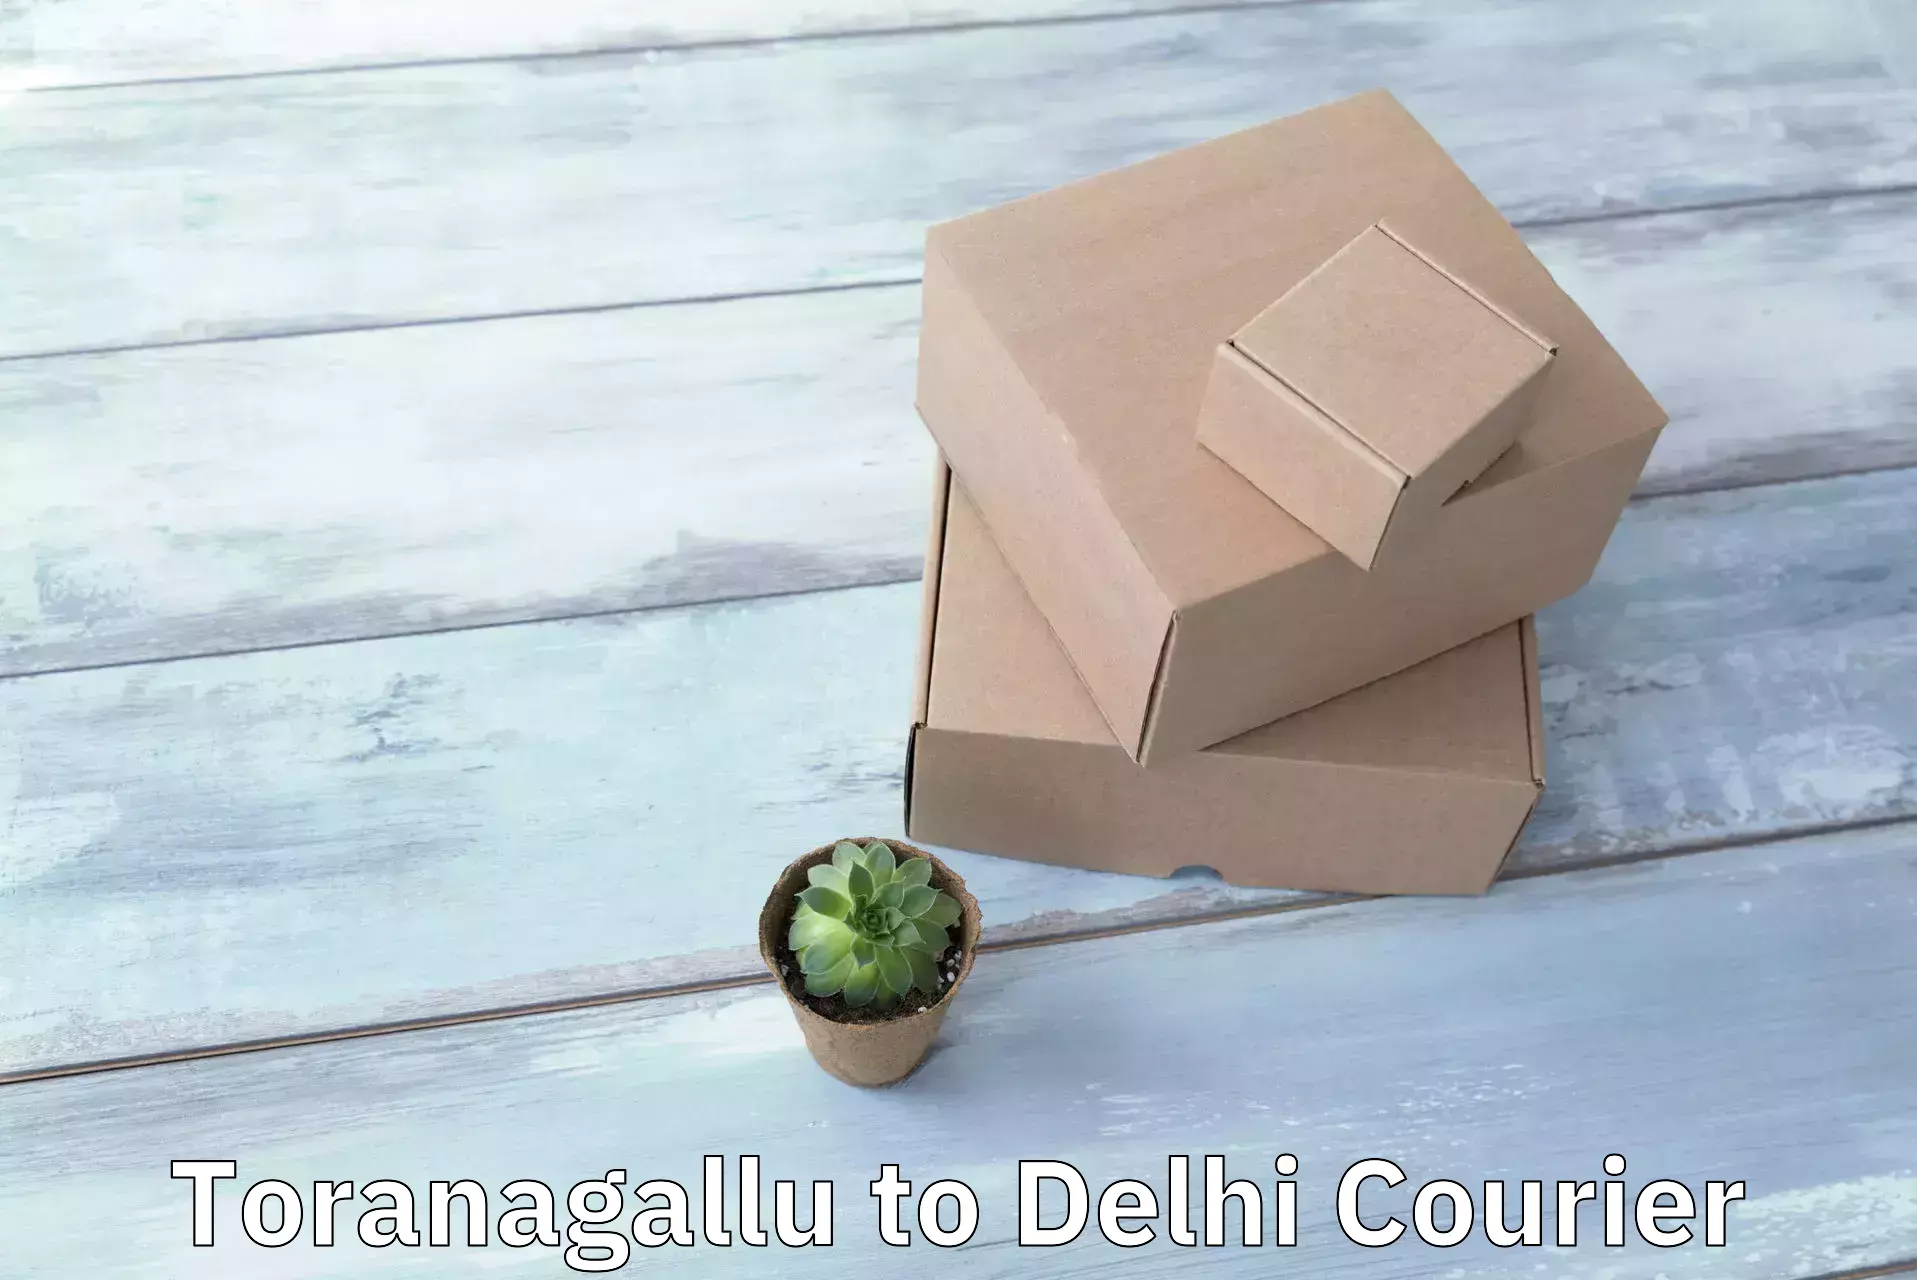 Courier service comparison in Toranagallu to Delhi